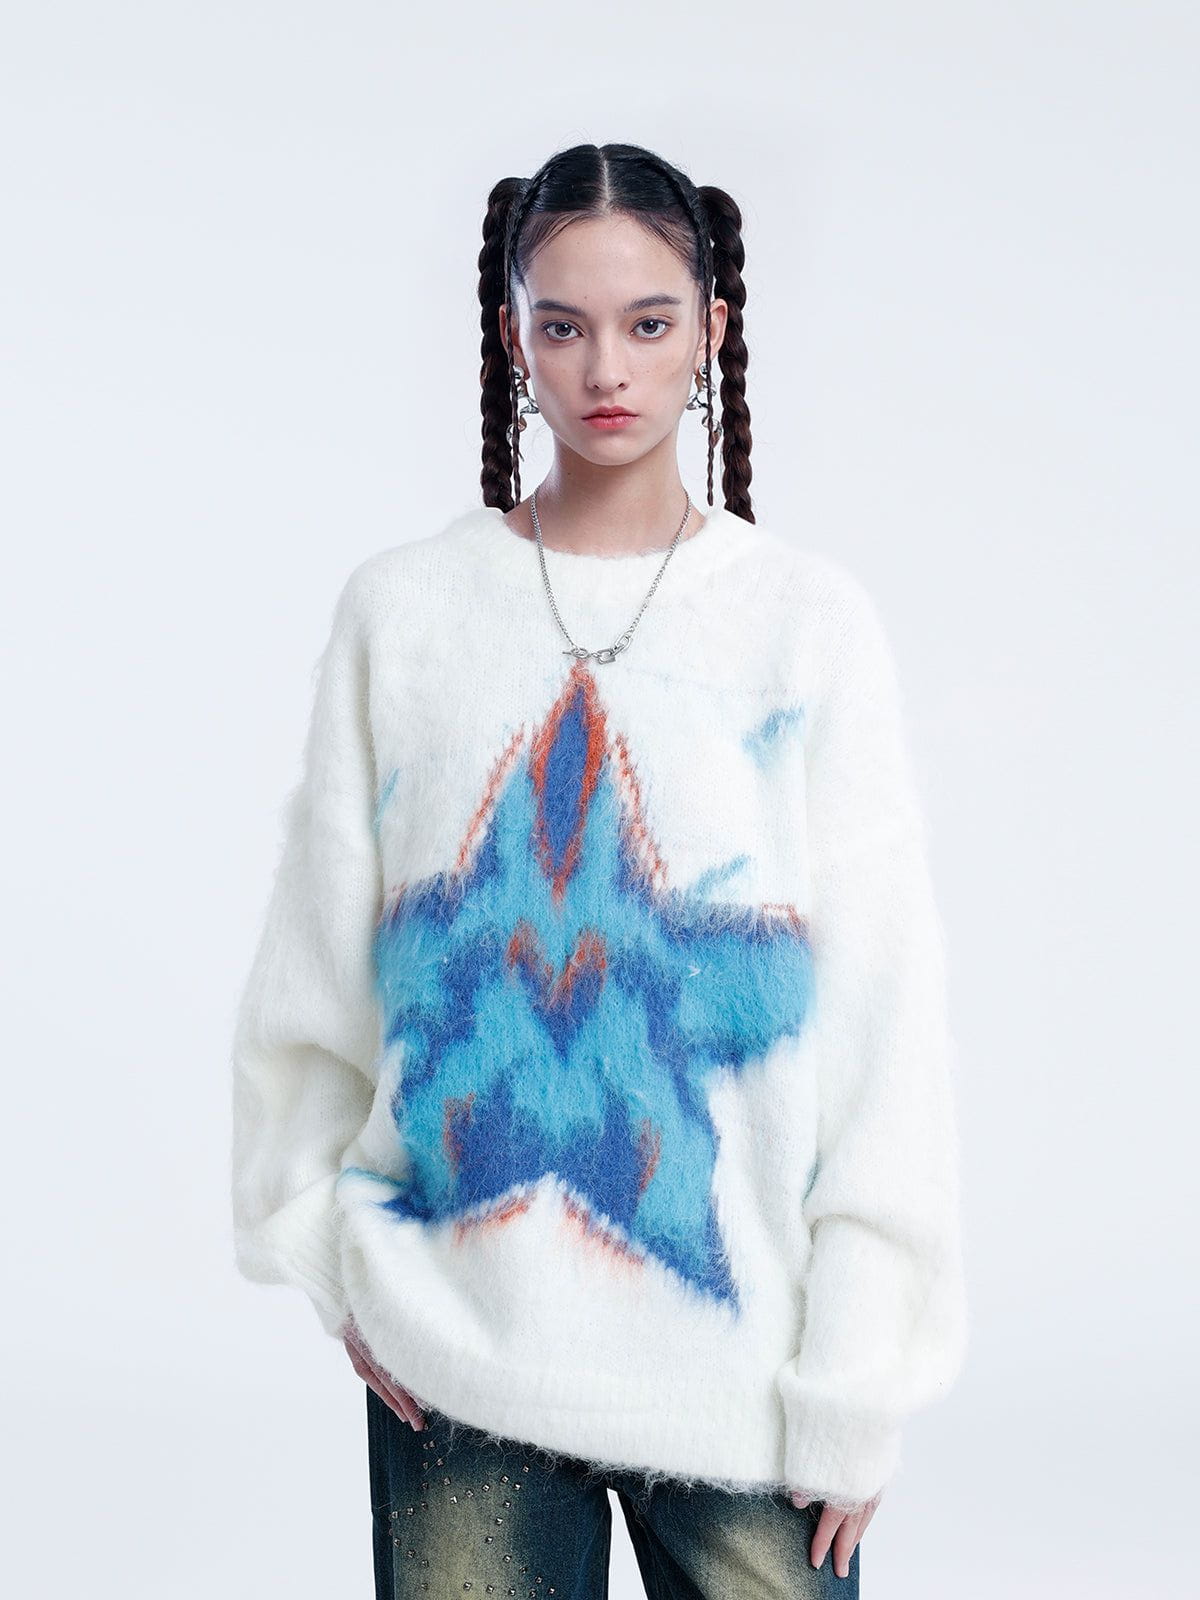 Aelfric Eden Star Jacquard Wool Blend Sweater